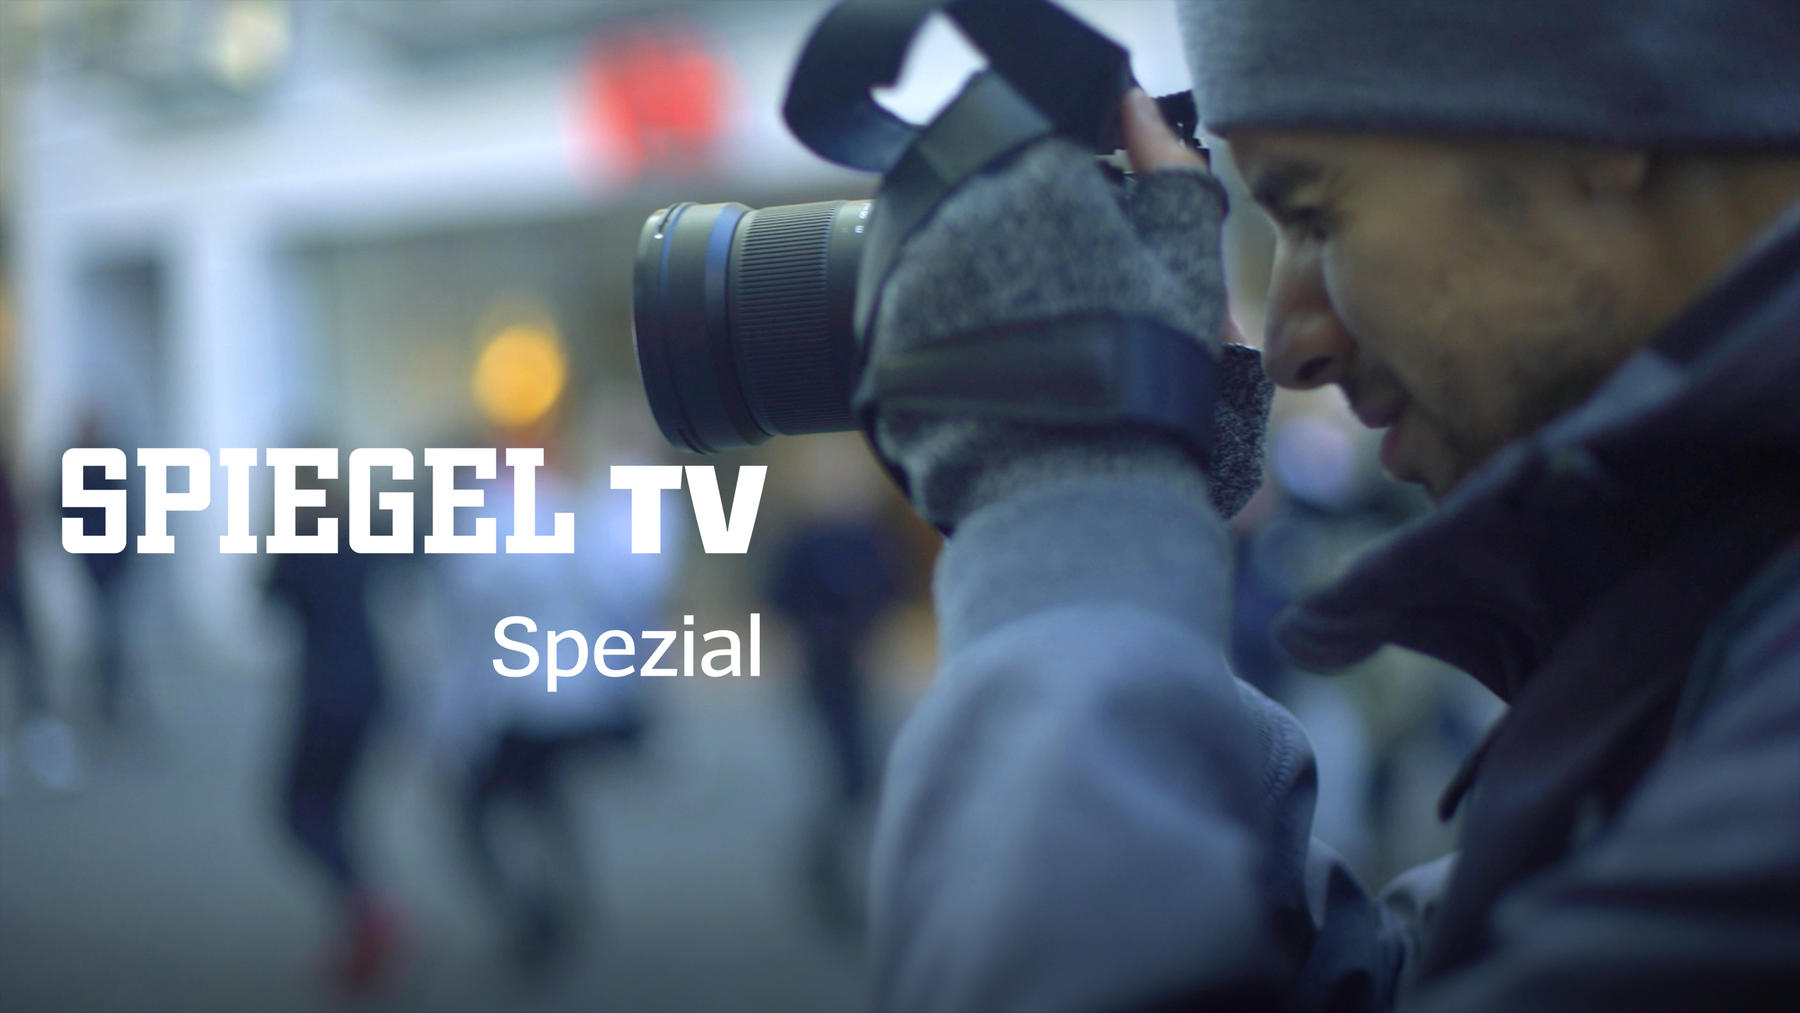 Spiegel TV Spezial